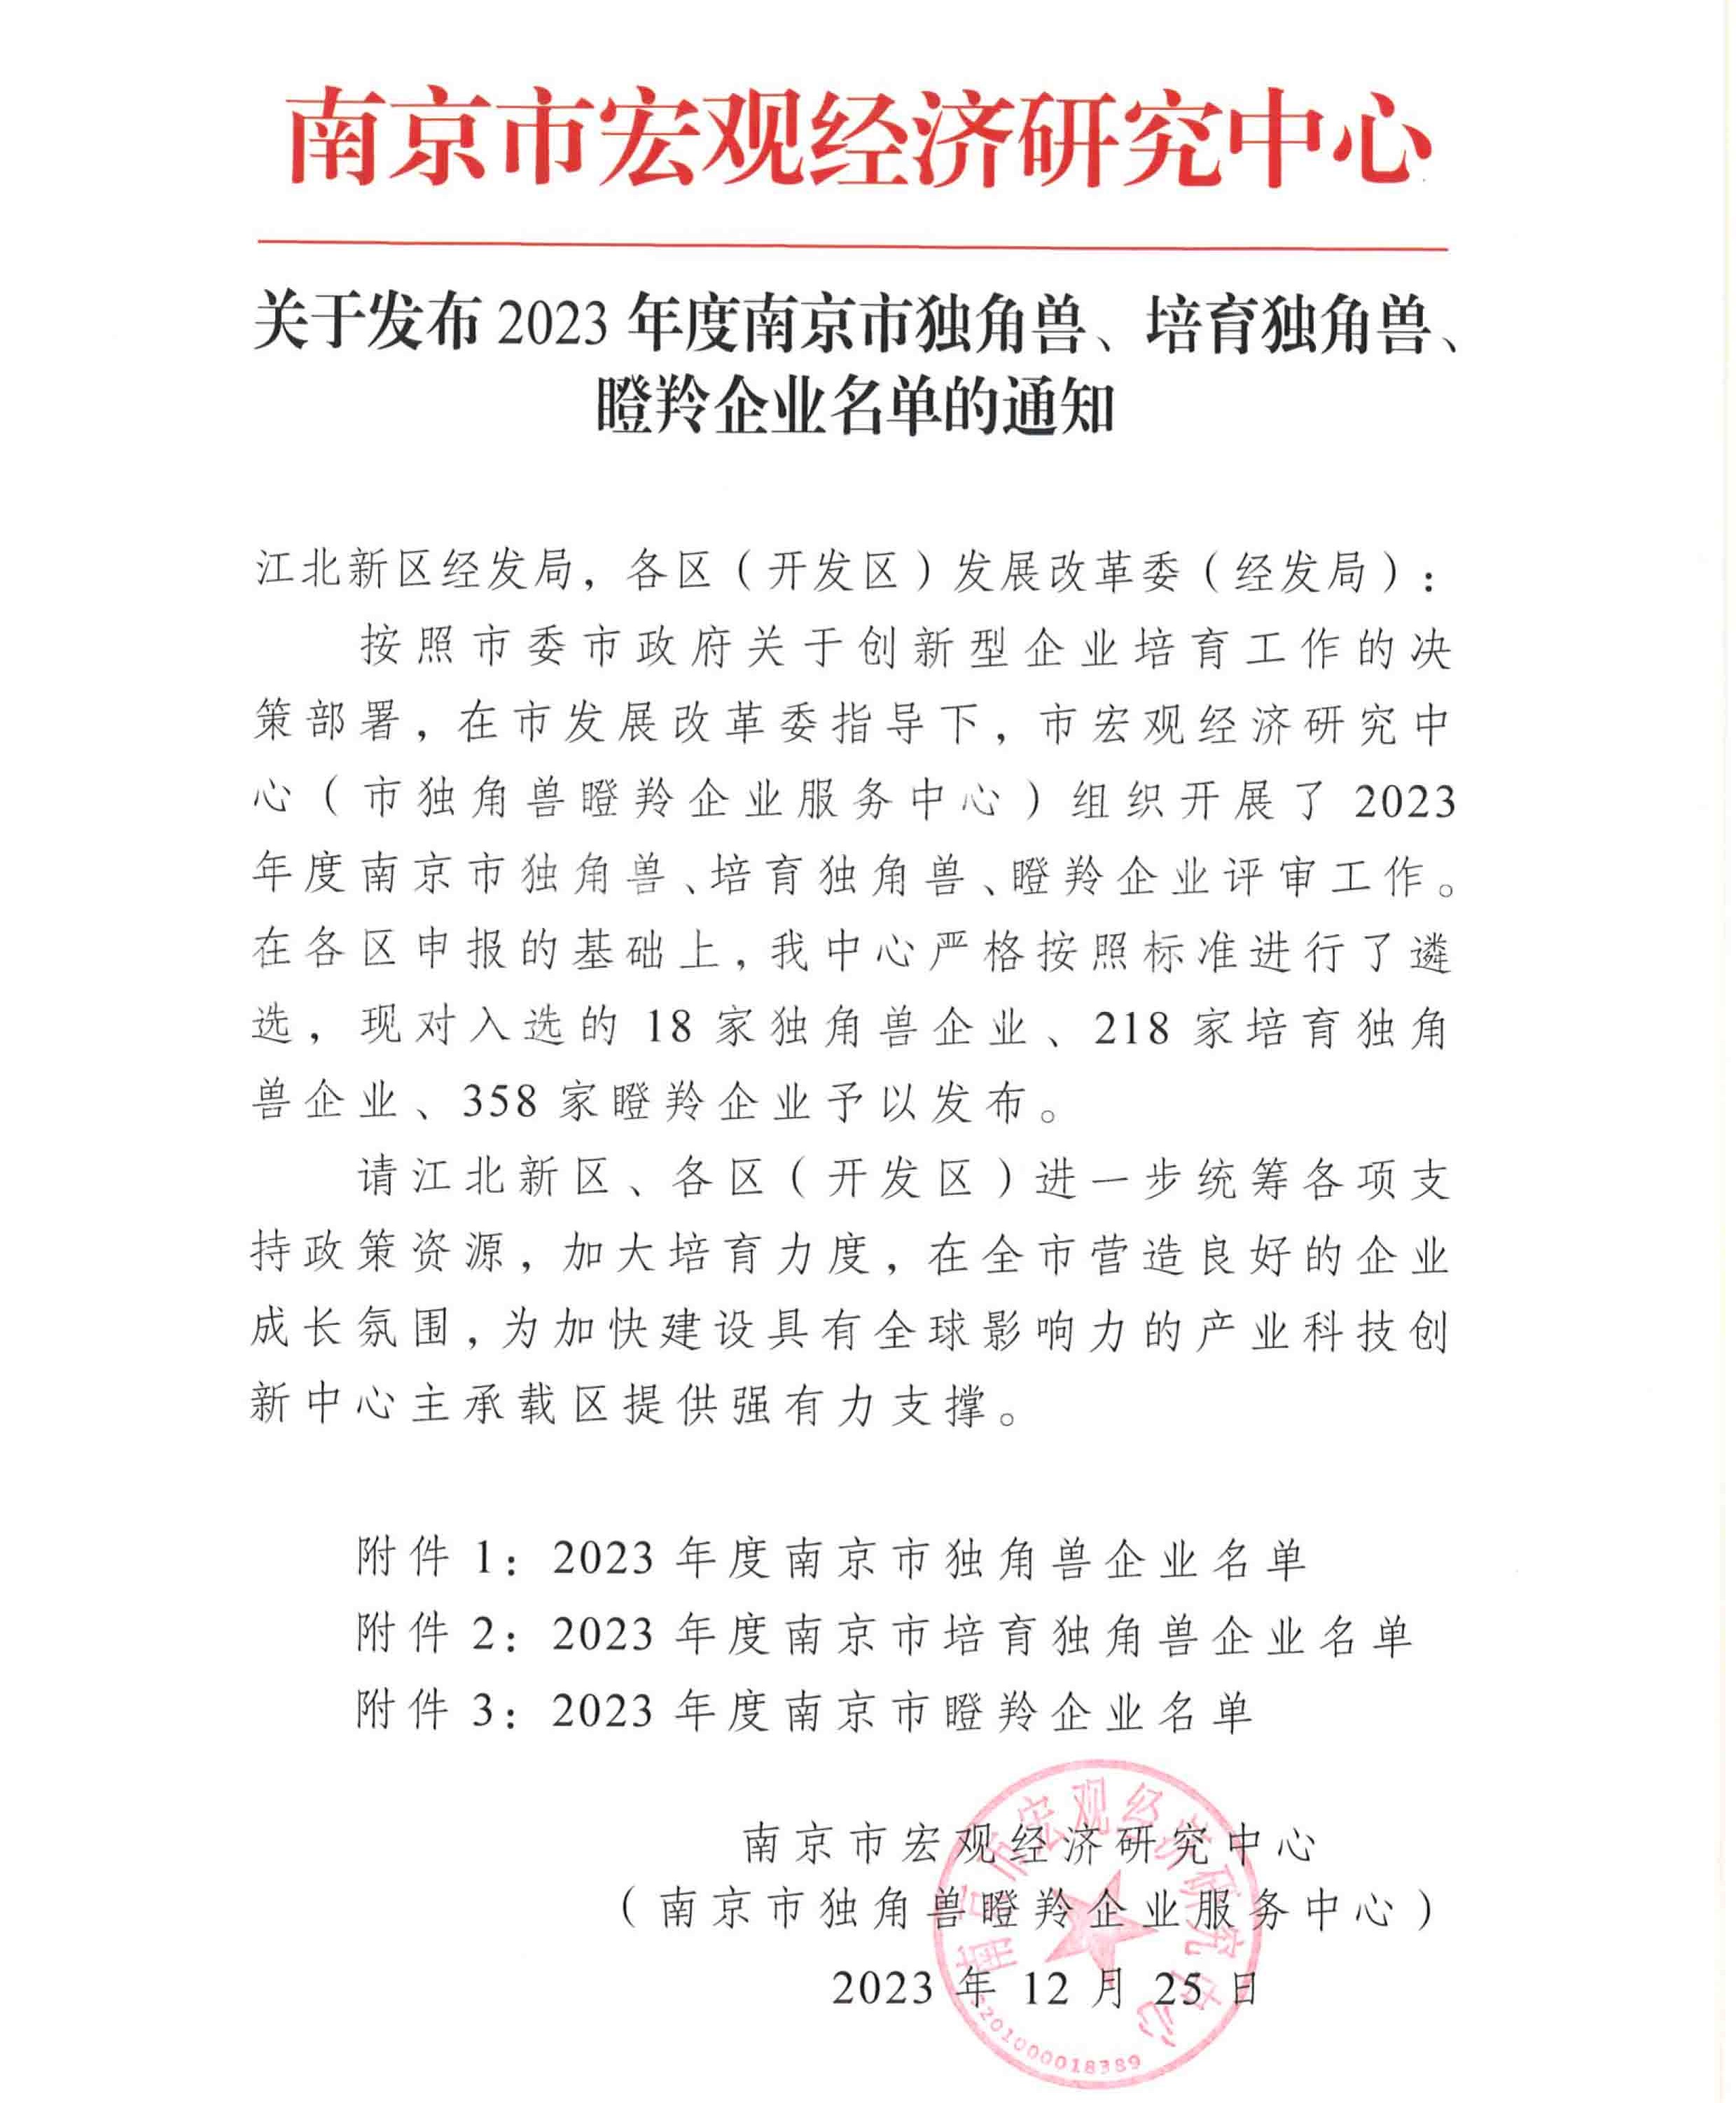 博納科技連續三年入選“南京市瞪羚企業”